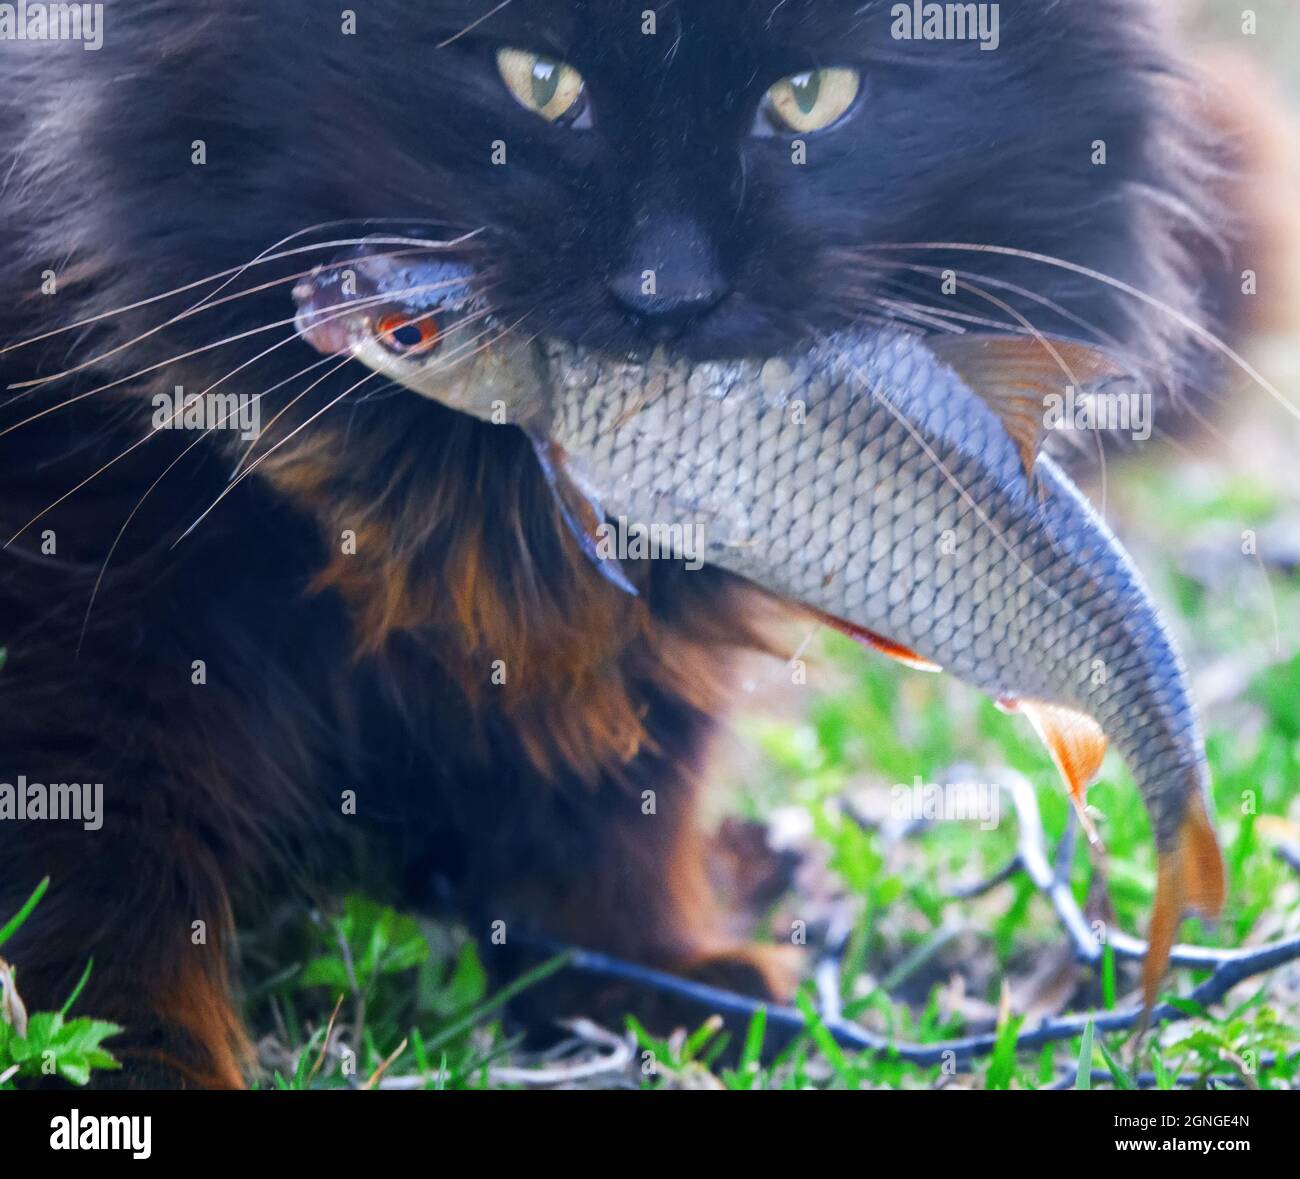 Diebischer Katzenfisch. Eine wildäugige schwarze Katze aus dem Dorf hat  Kakerlake gestohlen und schleppt sie in ihr Tal, wo sie Beute isst  Stockfotografie - Alamy